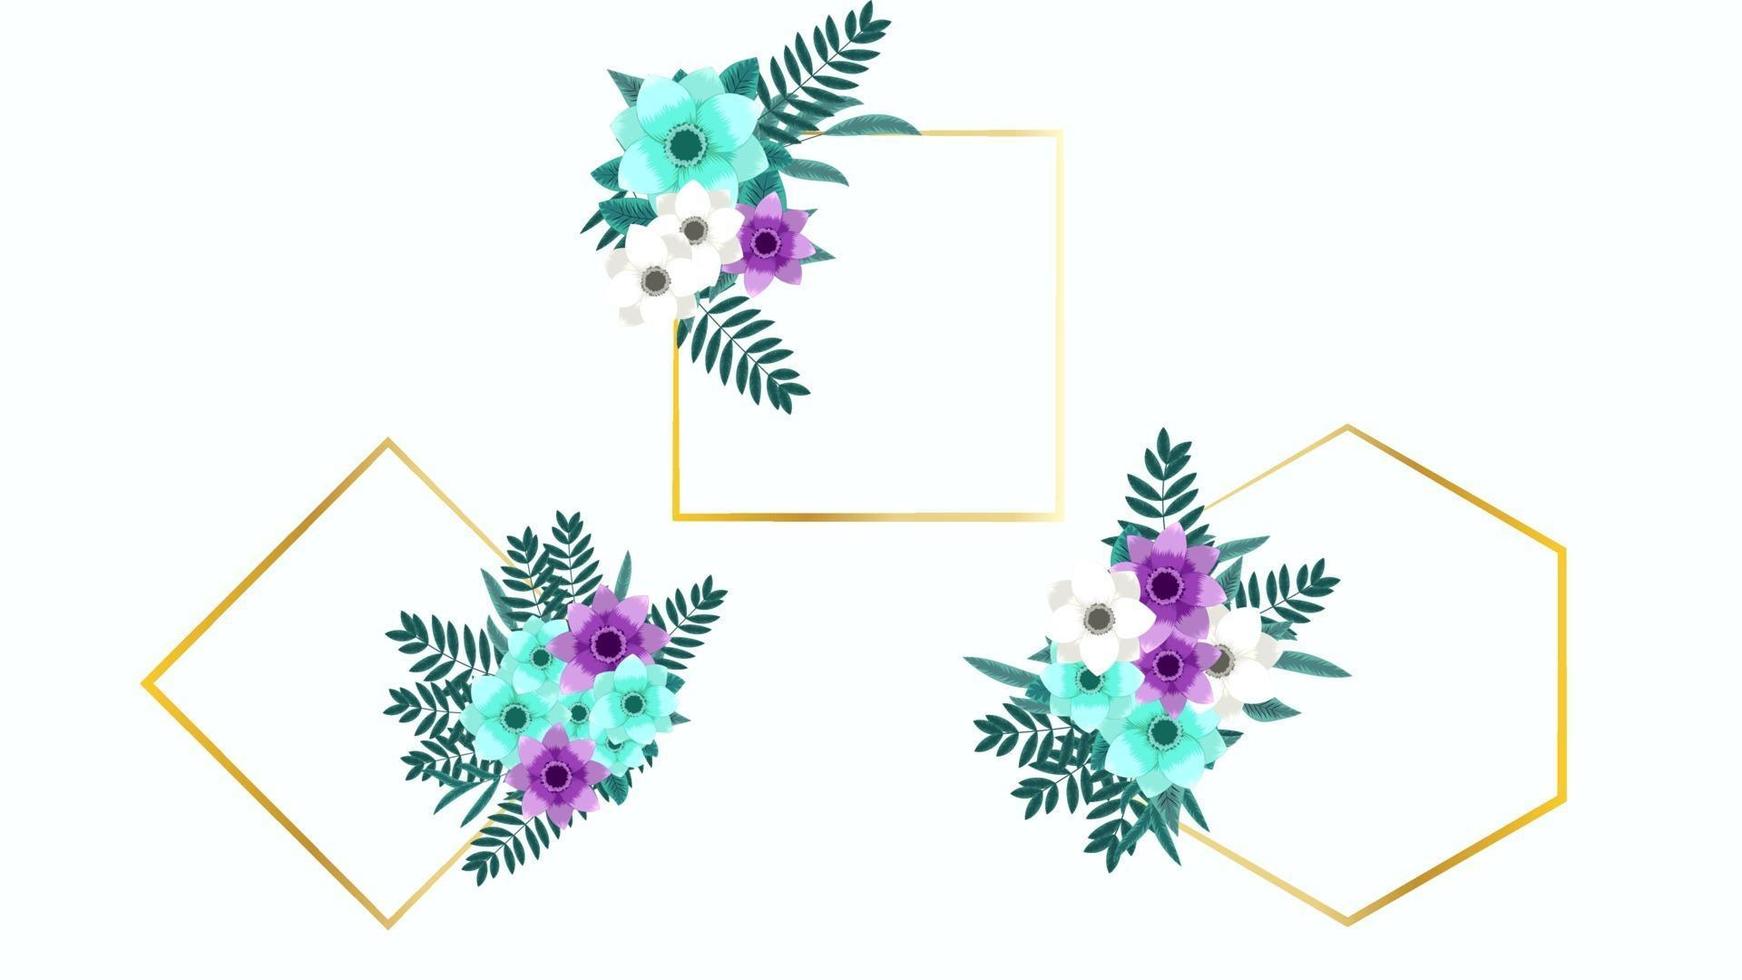 florales Ornament Design - Einladung oder Grußkarte für Hochzeitsdeko vektor